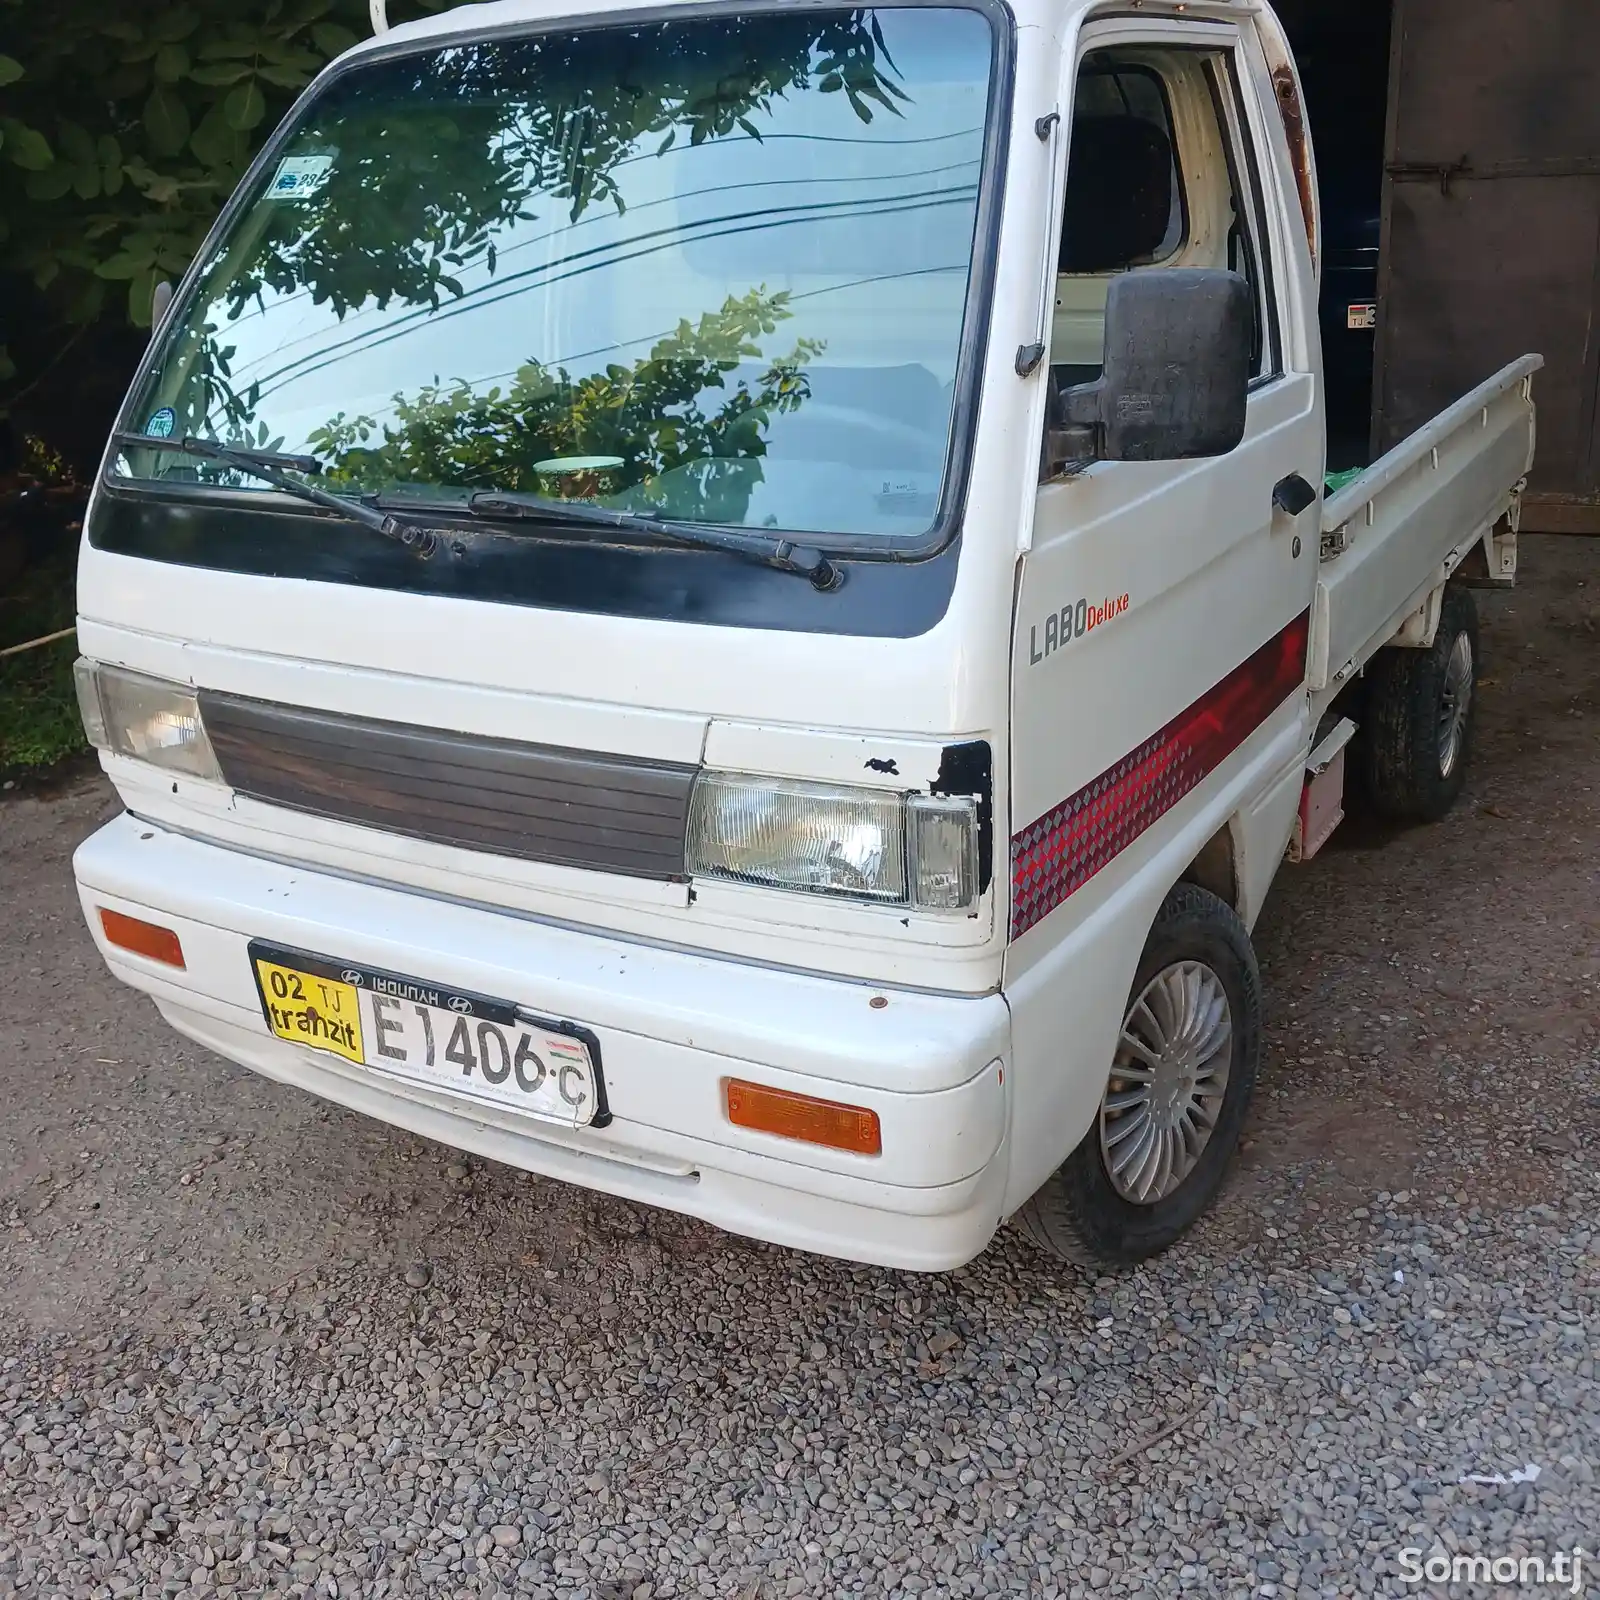 Бортовой автомобиль Daewoo Labo, 1995-2